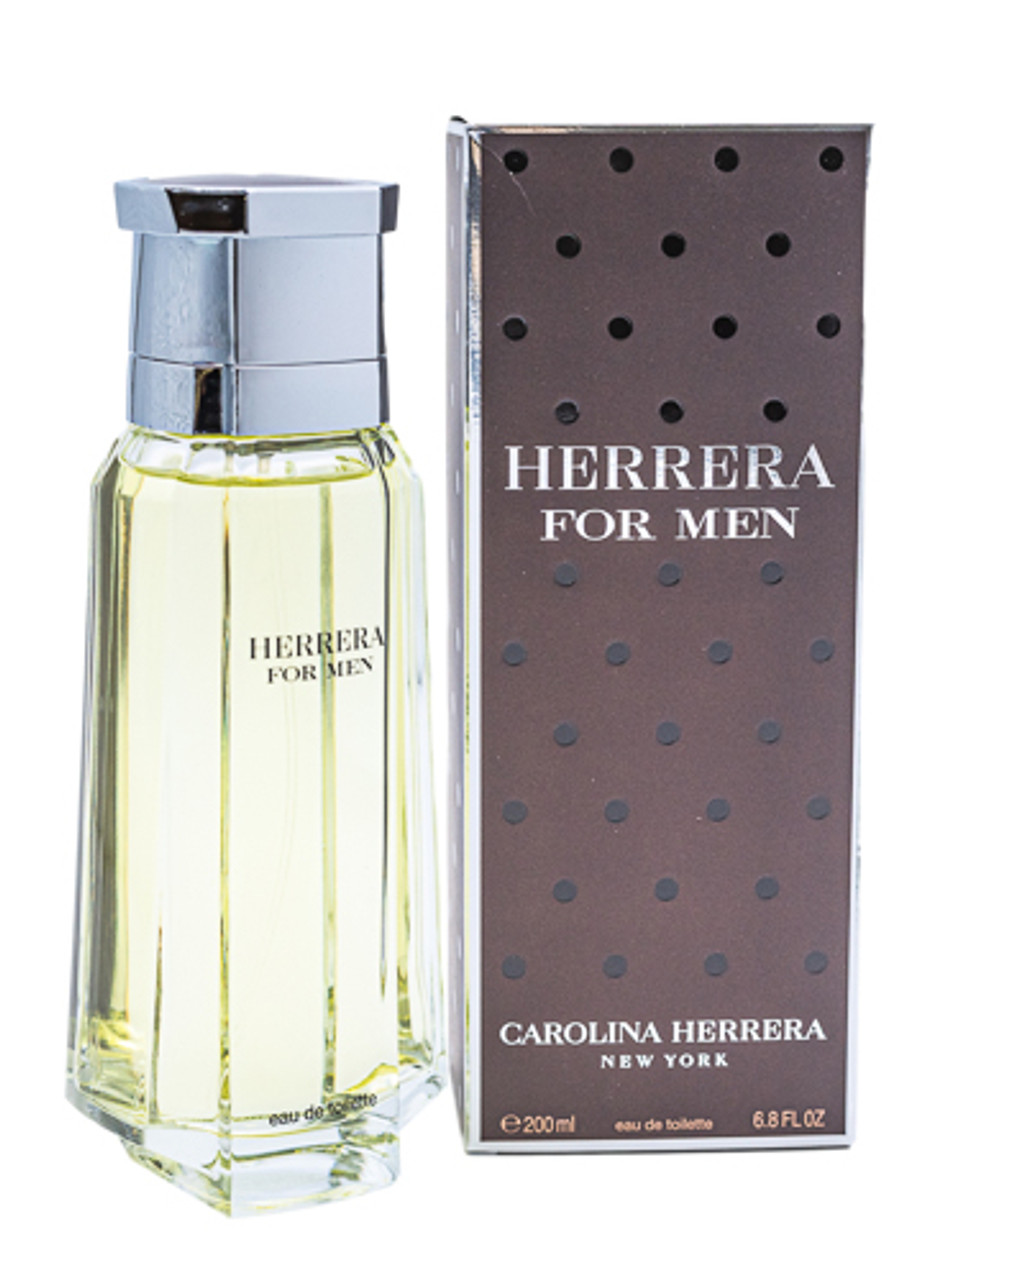 Herrera for Men 1991 by Carolina Herrera Eau De Toilette for 